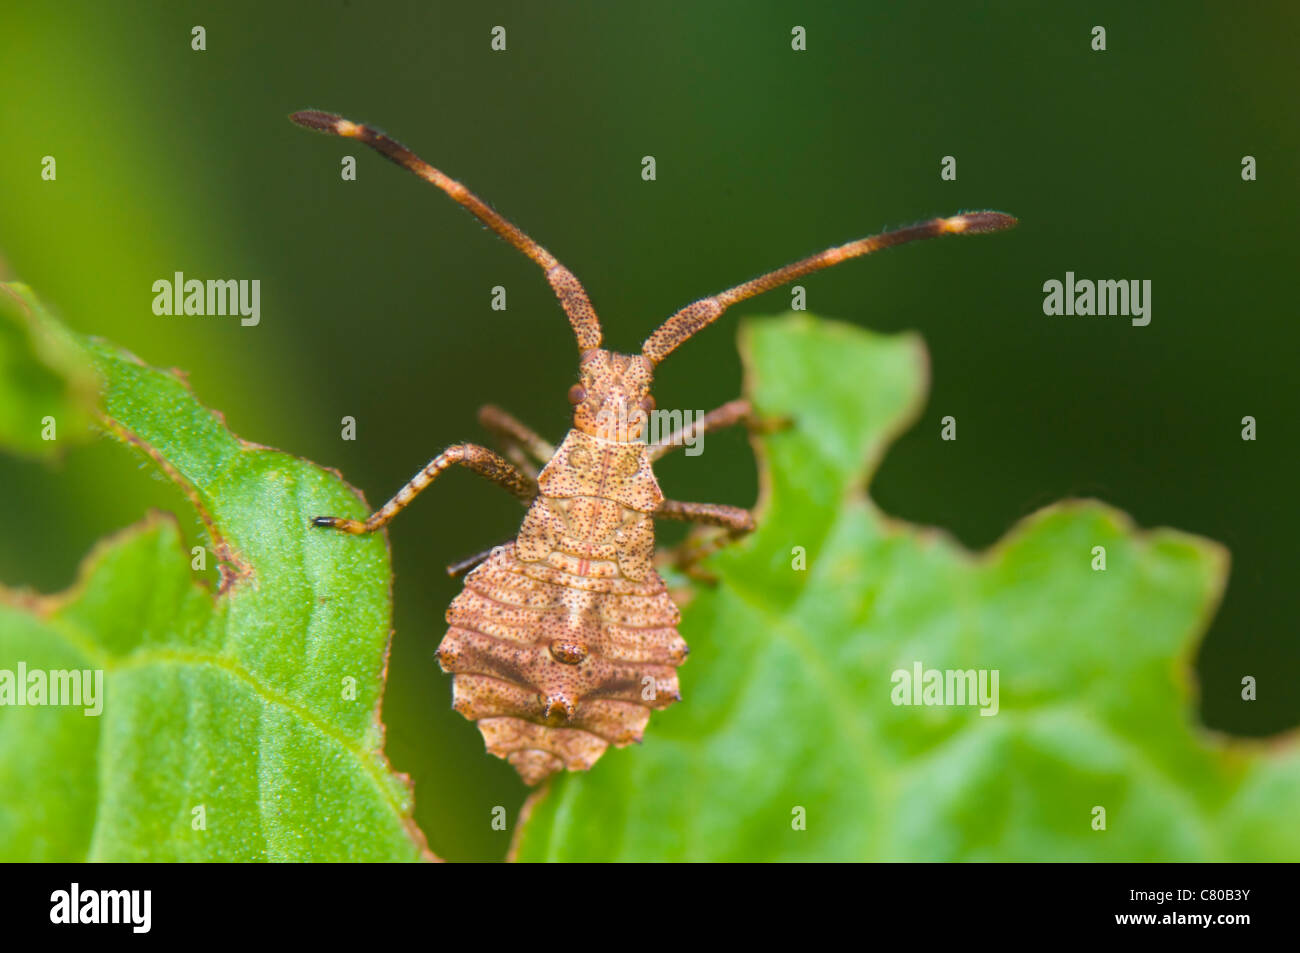 Squash Bug (Coreus marginatus) Stock Photo